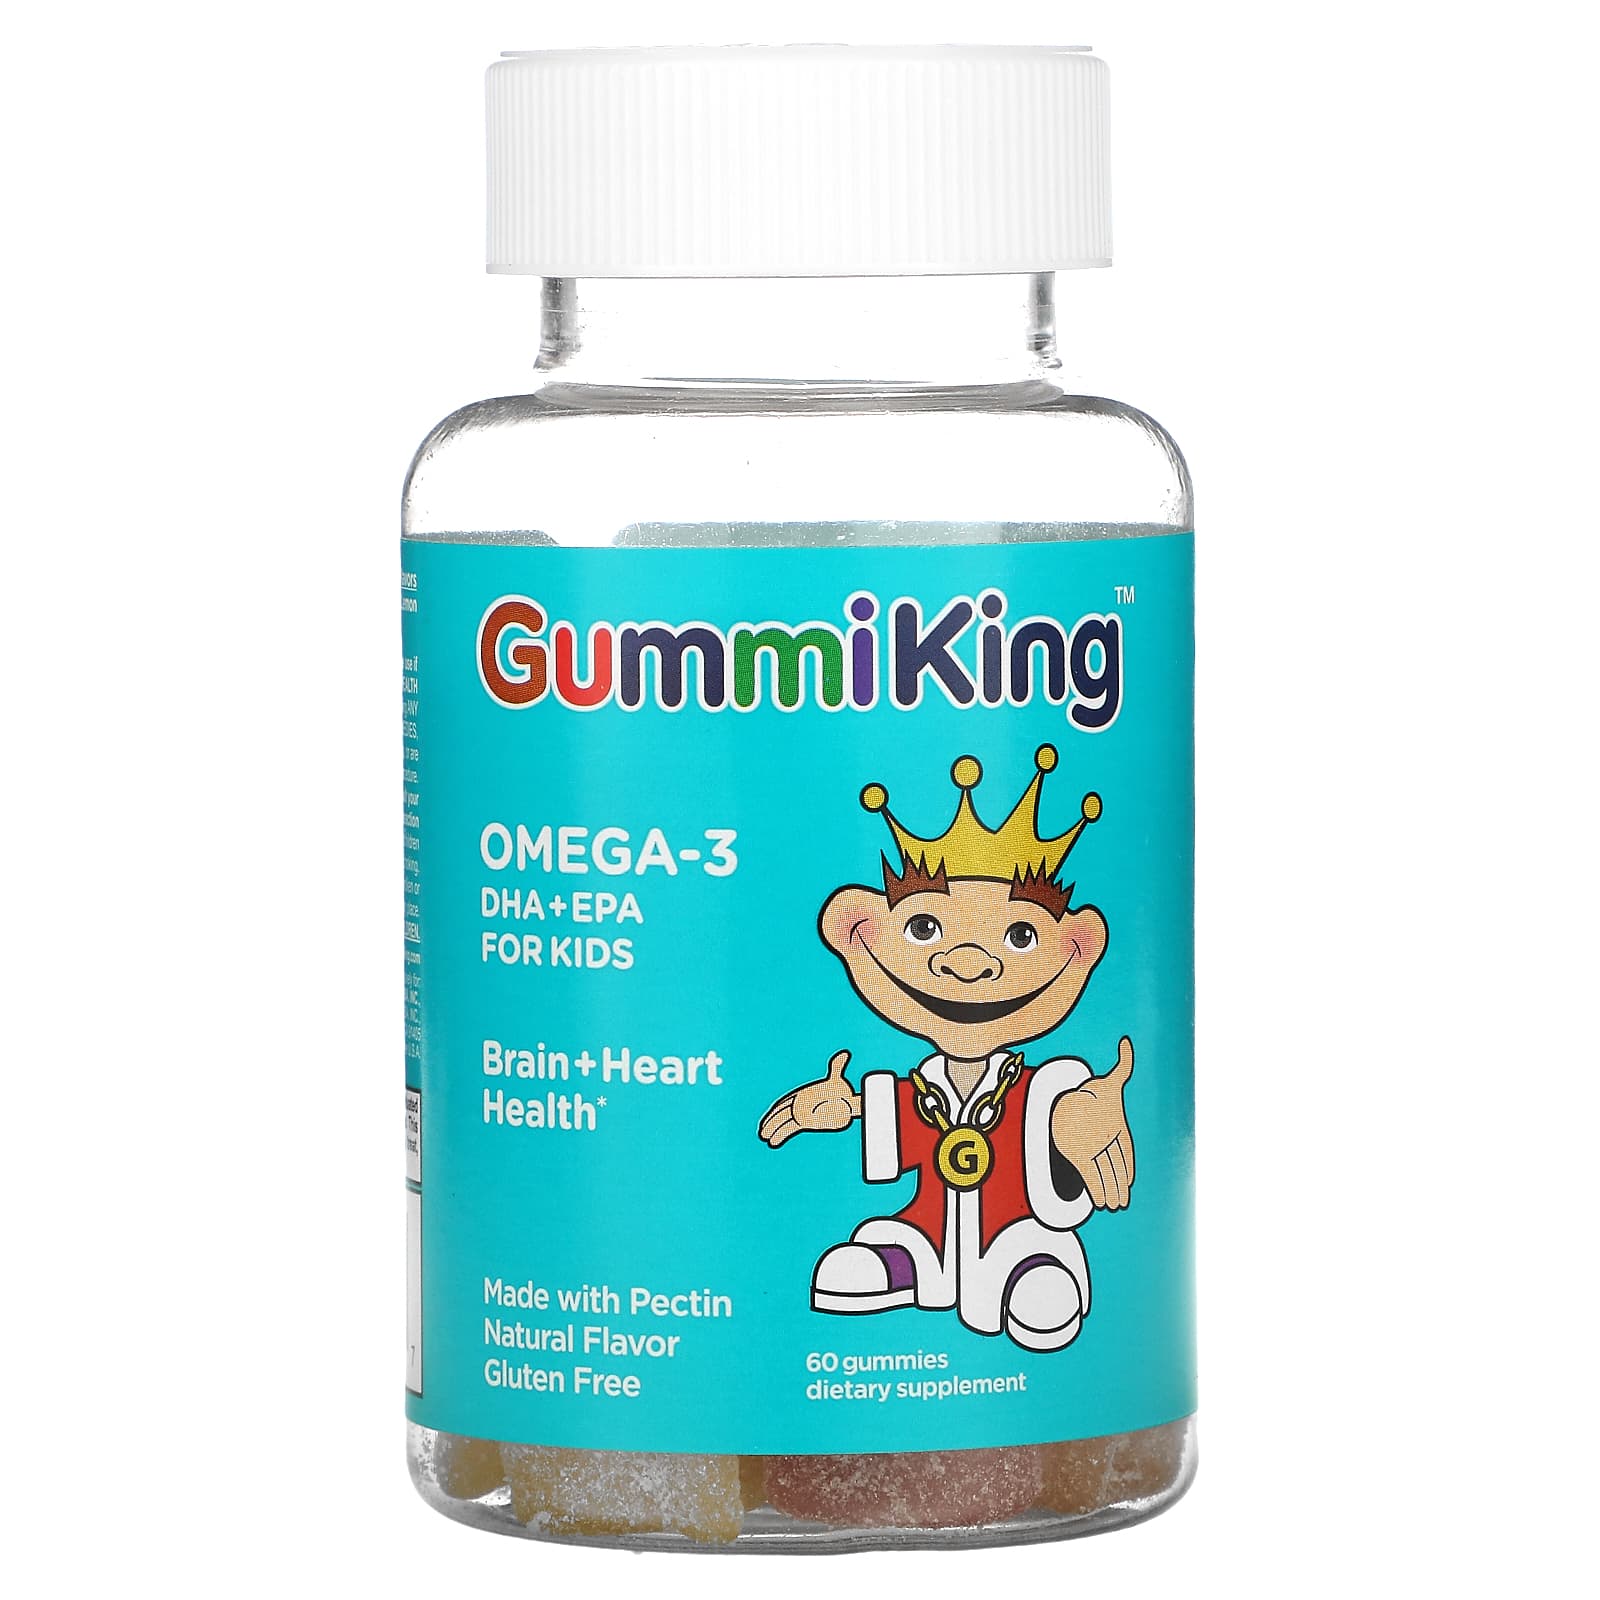 GummiKing, حمضي الدوكوساهيكسانويك + الإيكوسابنتانويك من أوميجا-3 للأطفال،  فراولة وبرتقال وليمون، 60 علكة